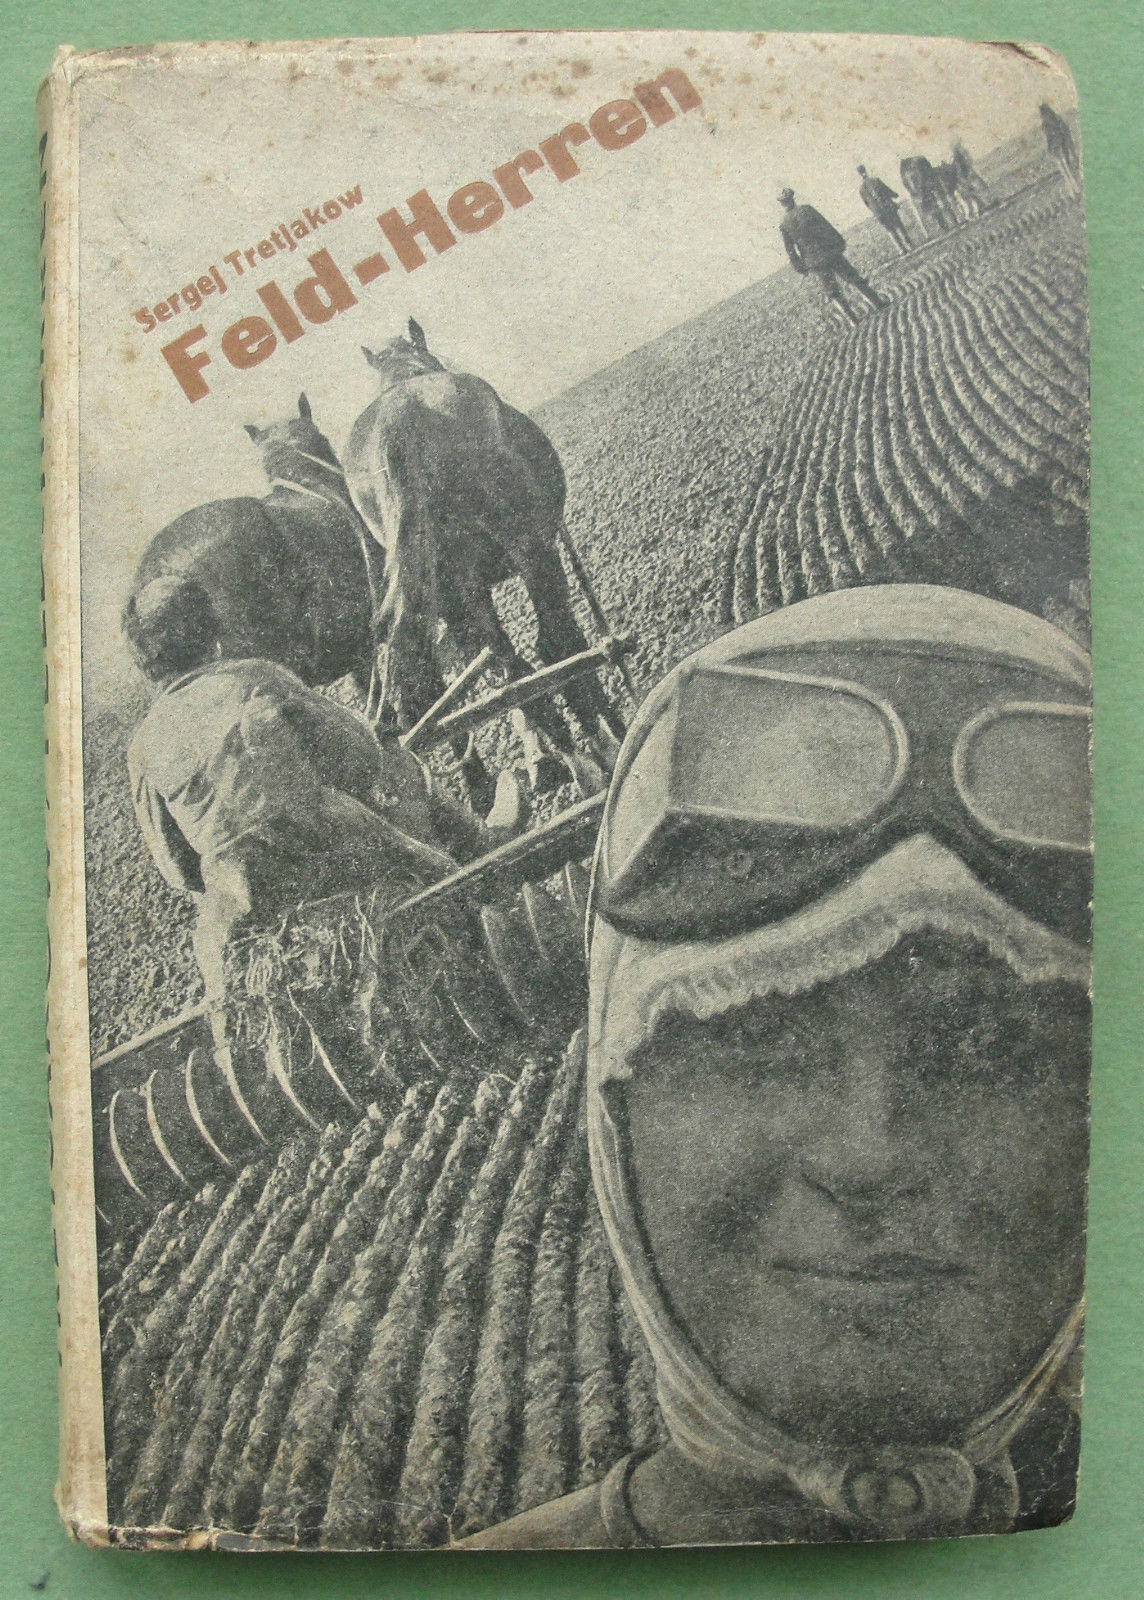 Сборник Feld-Herren (1932, Хозяин полей), в котором были опубликованы немецкие переводы колхозных очерков Третьякова, ставшие известные Беньямину